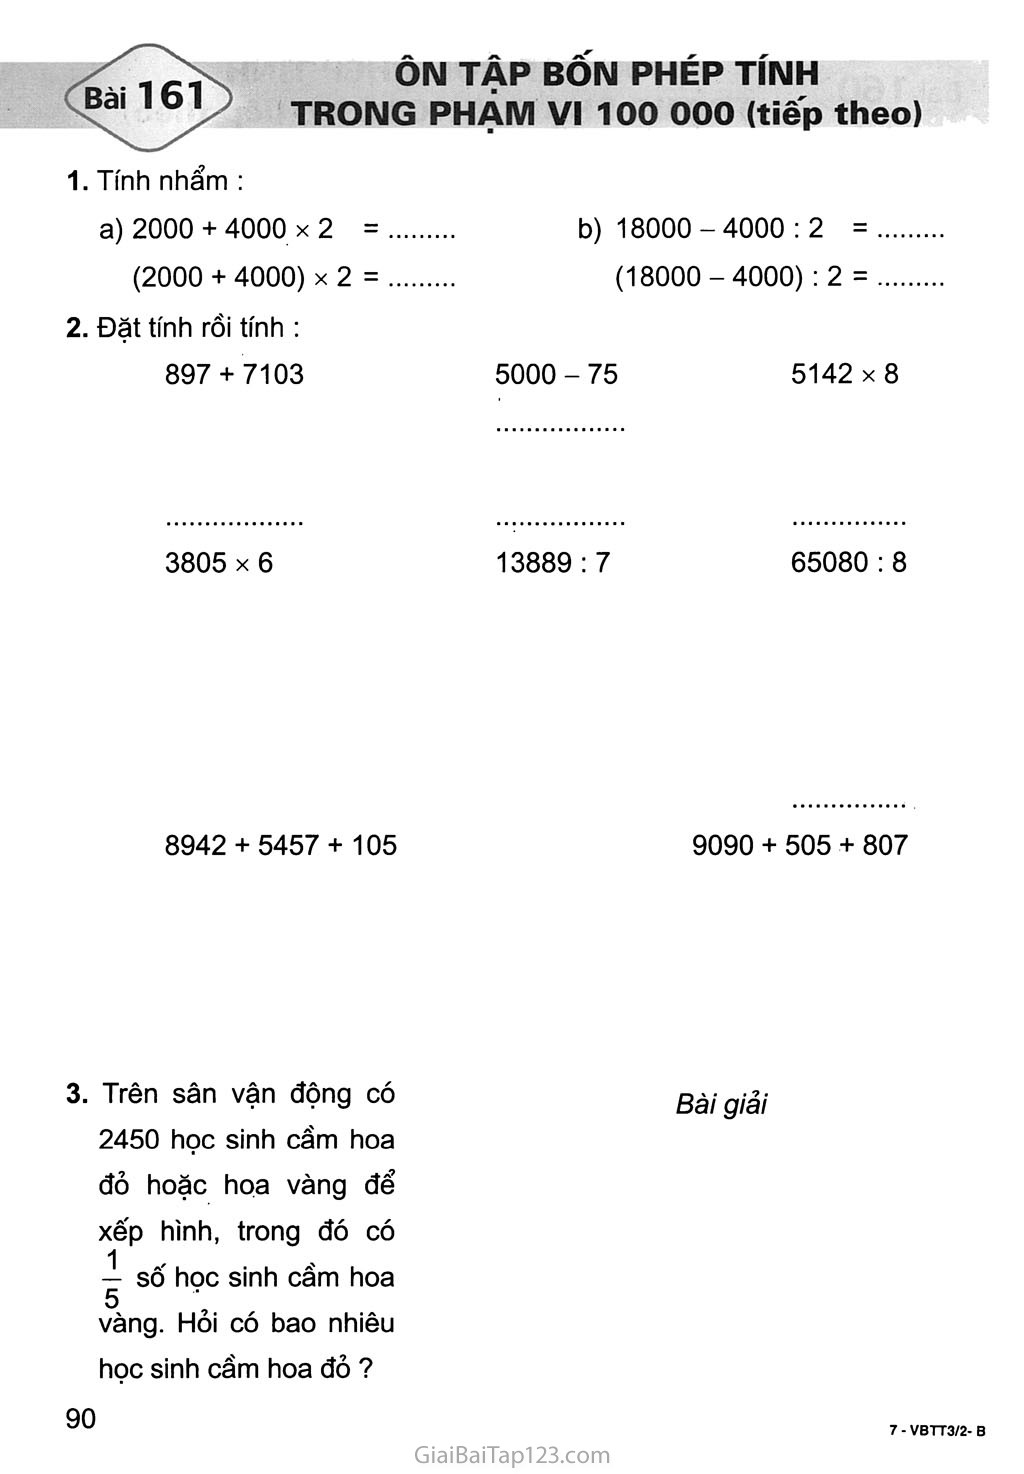 Bài 161: Ôn tập bốn phép tính trong phạm vi 100 000 (tiếp theo) trang 1